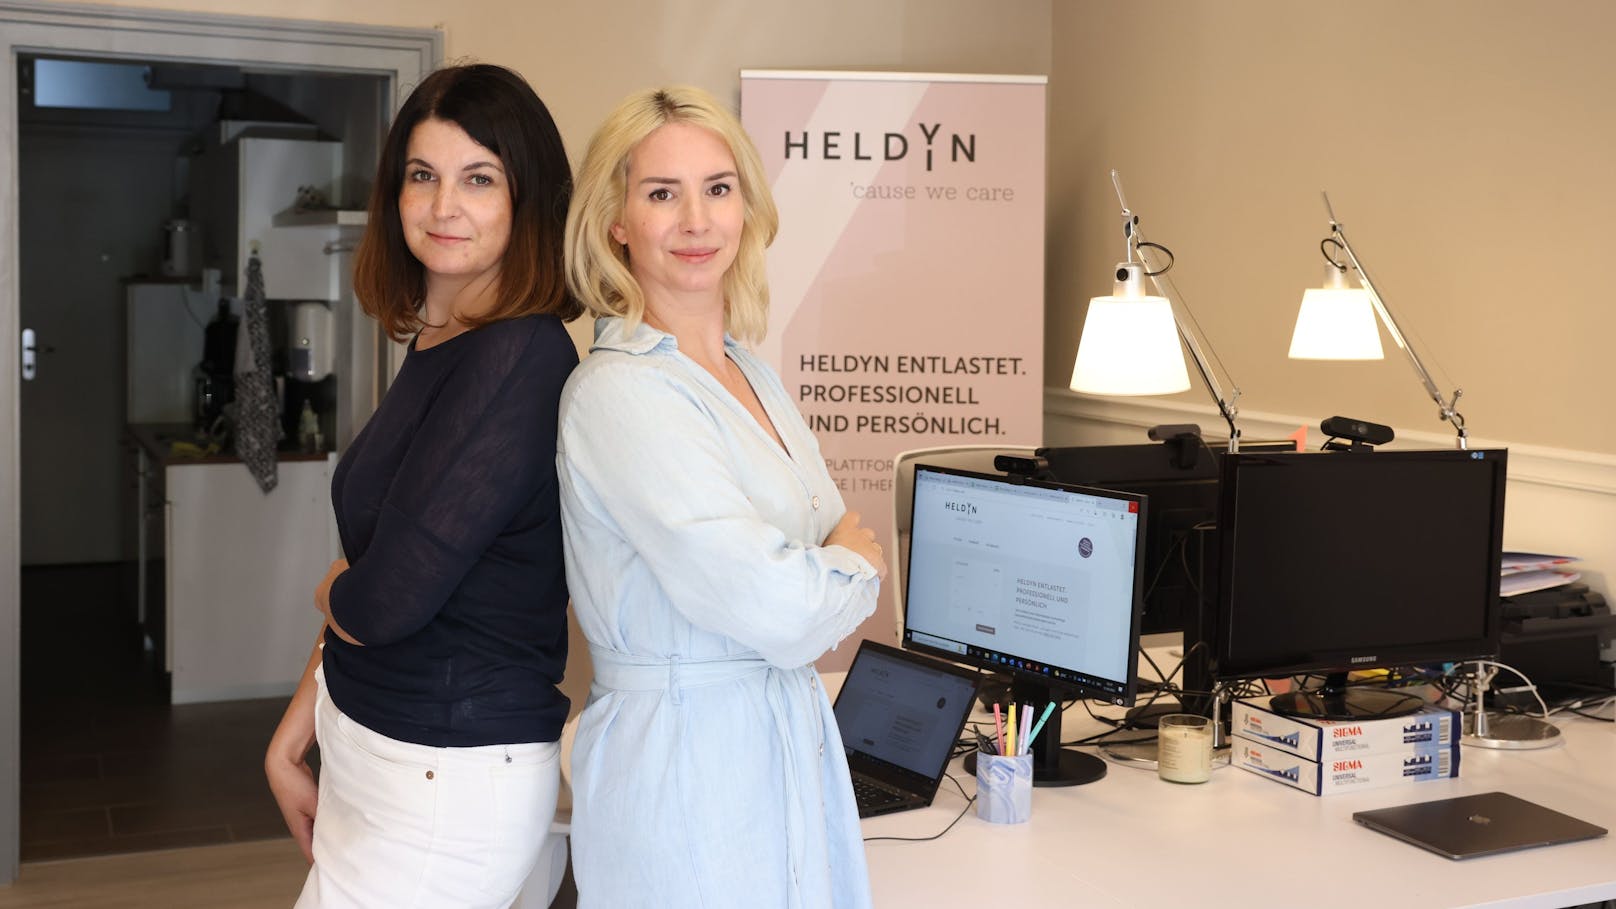 Sabine Niedermüller und Simone Mérey gründeten das Startup "HeldYn". Mit fünf Klicks kann man über die Website eine Pflegekraft buchen, die zuhause unterstützt.